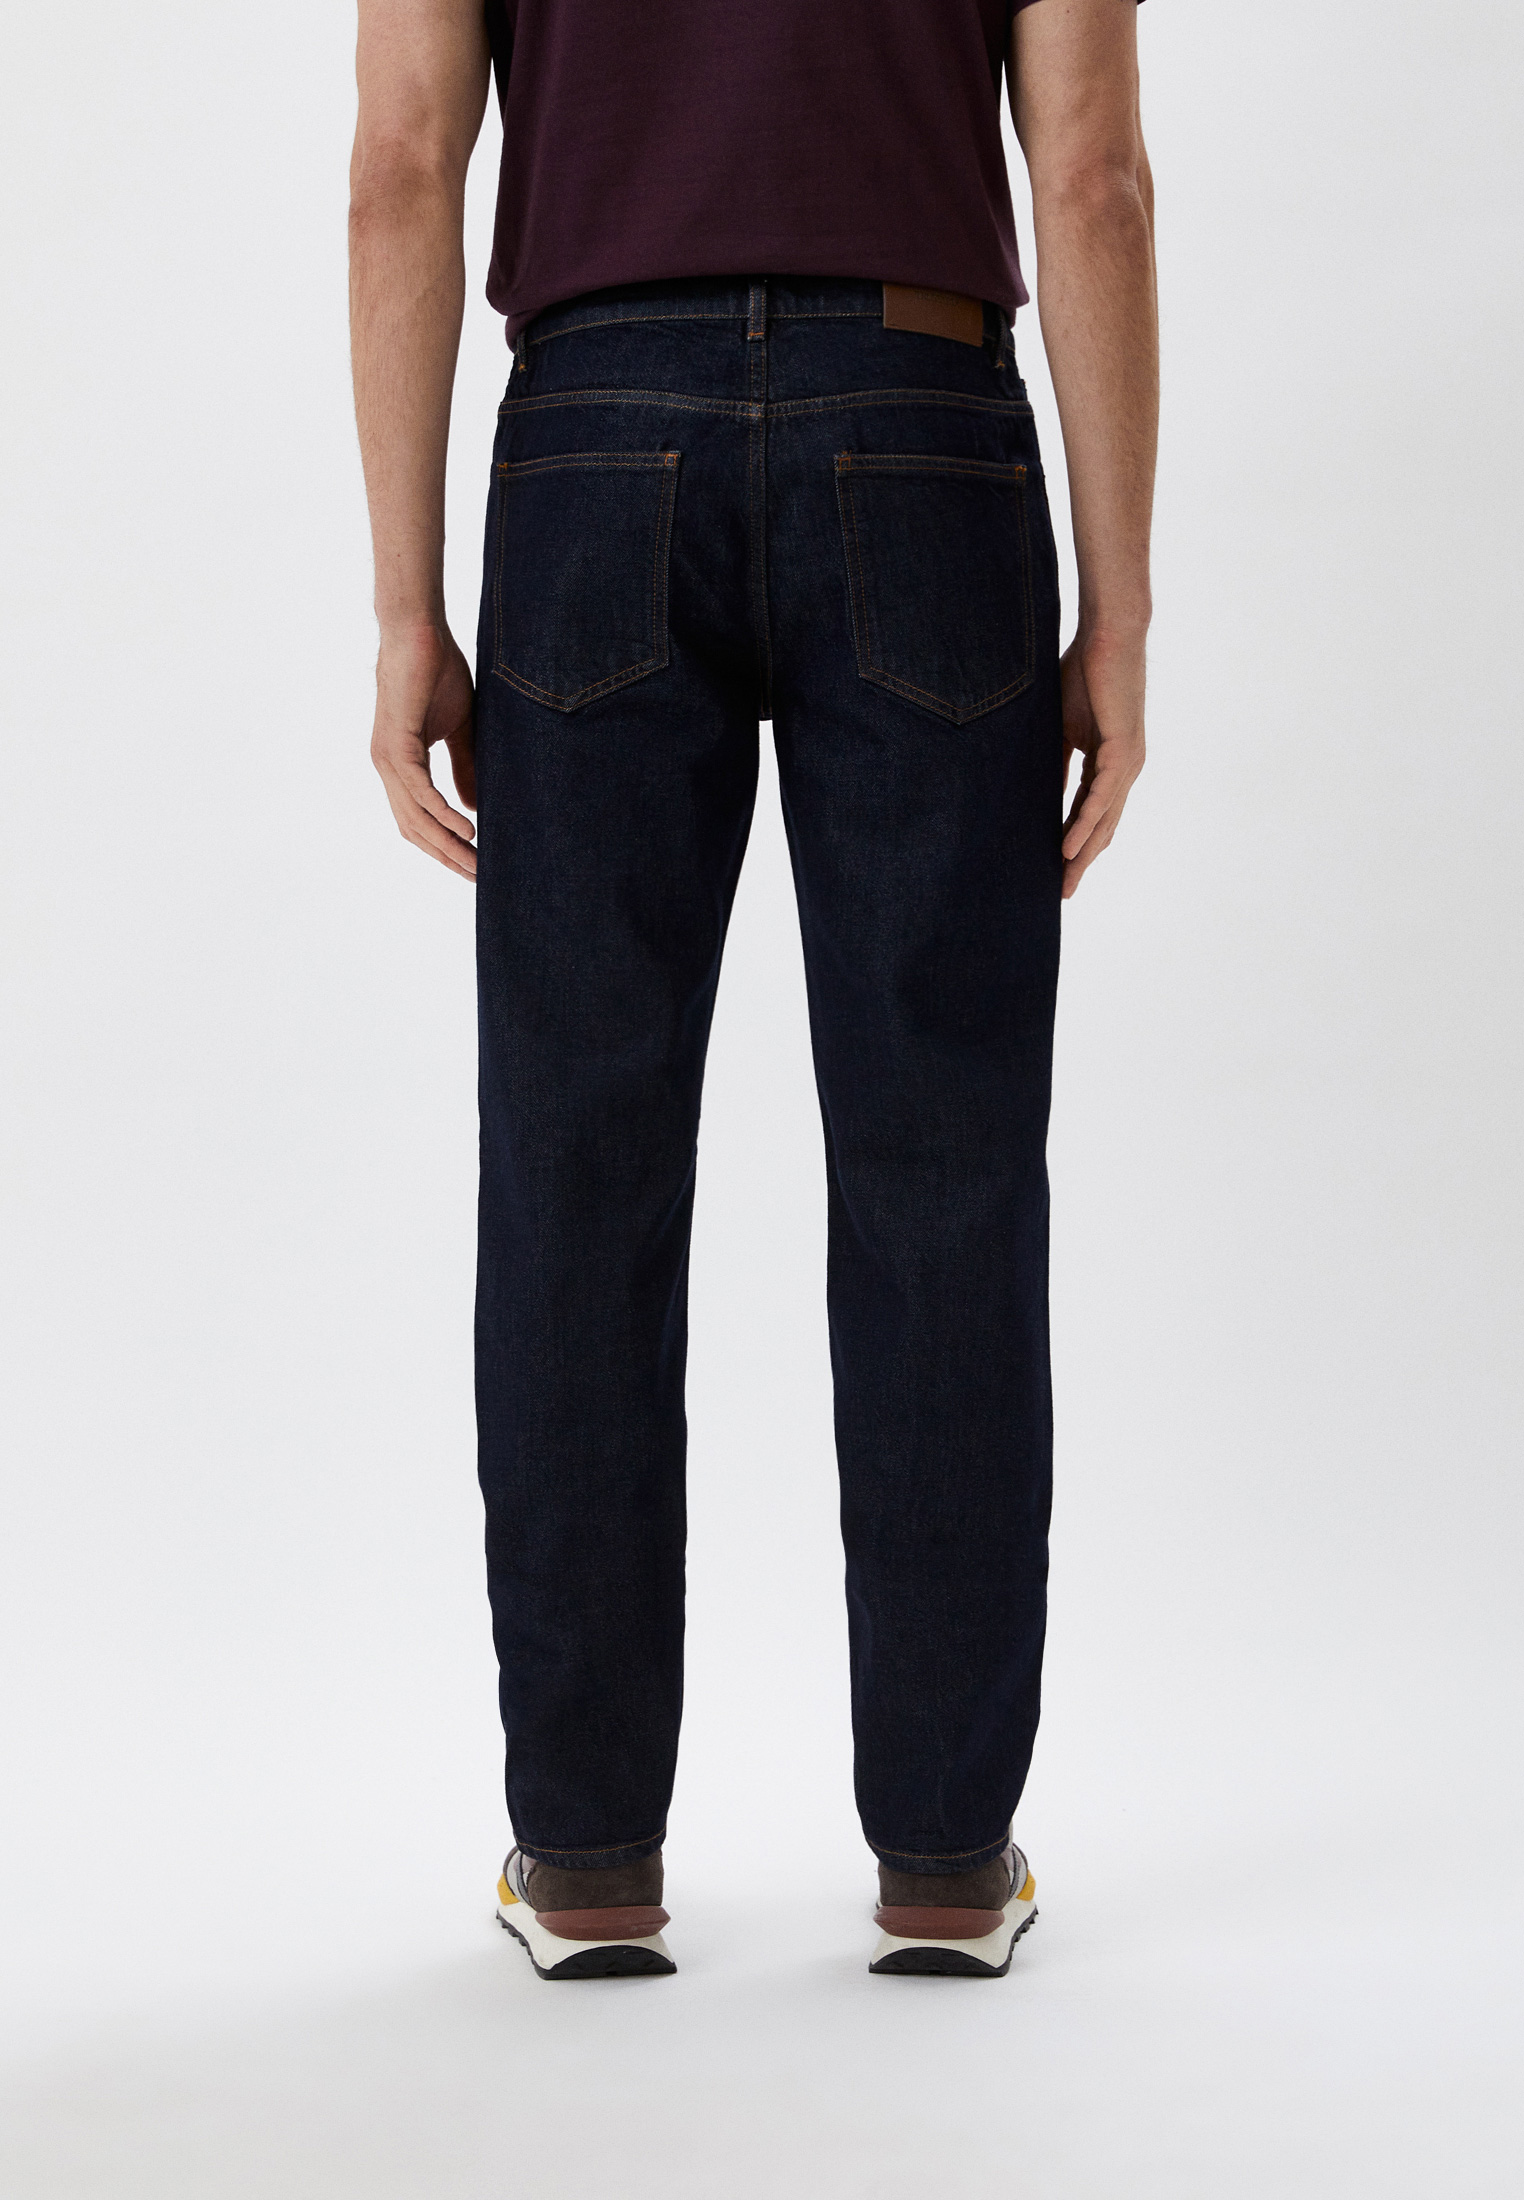 Мужские прямые джинсы Trussardi (Труссарди) 52J00001-1T005945: изображение 3